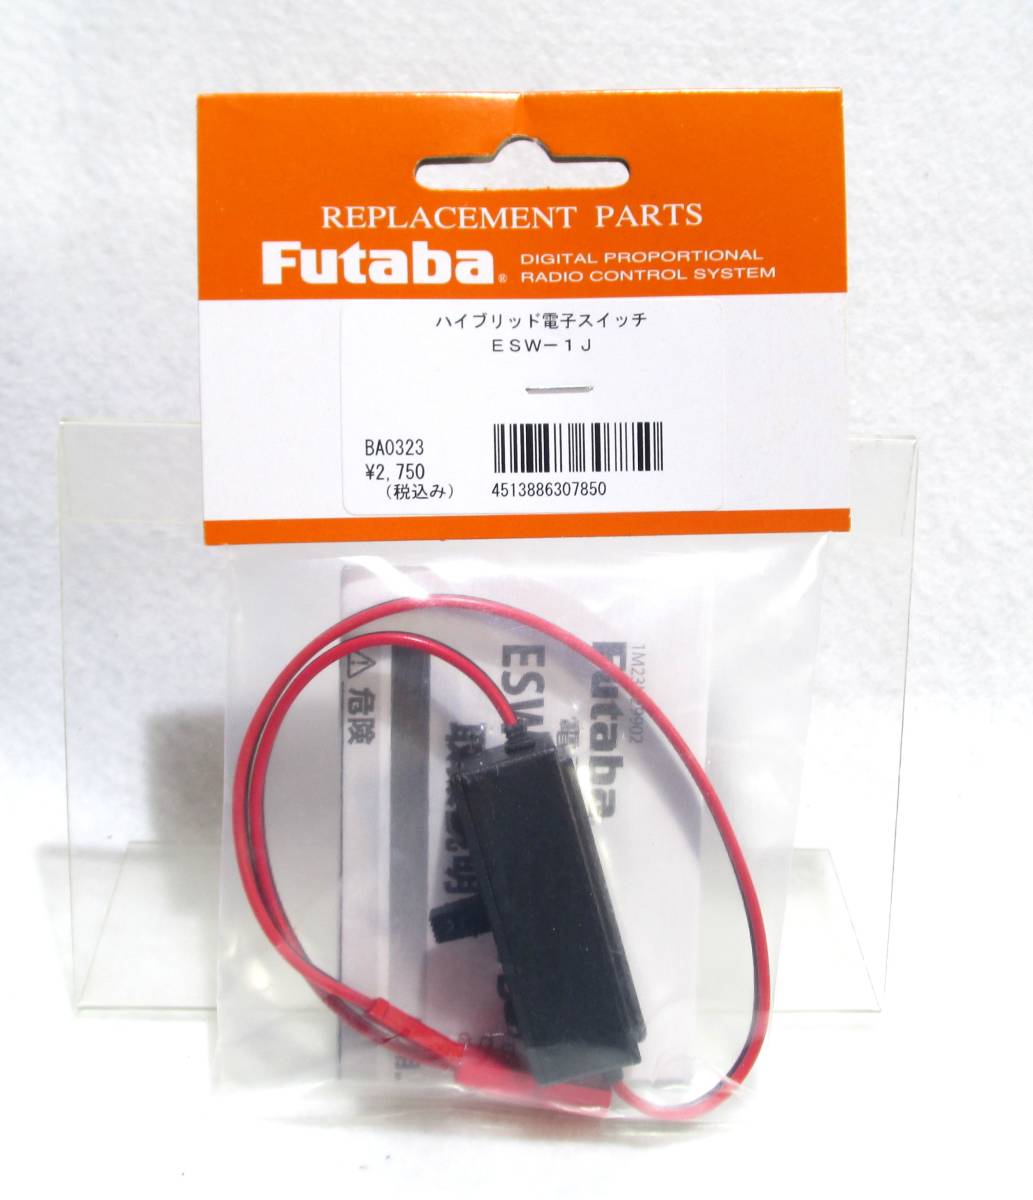 * Futaba BA0323 hybrid электронный переключатель ввод Futaba штекер * самолет вертолет Balsa комплект DIY модифицировано высокий вольтаж 